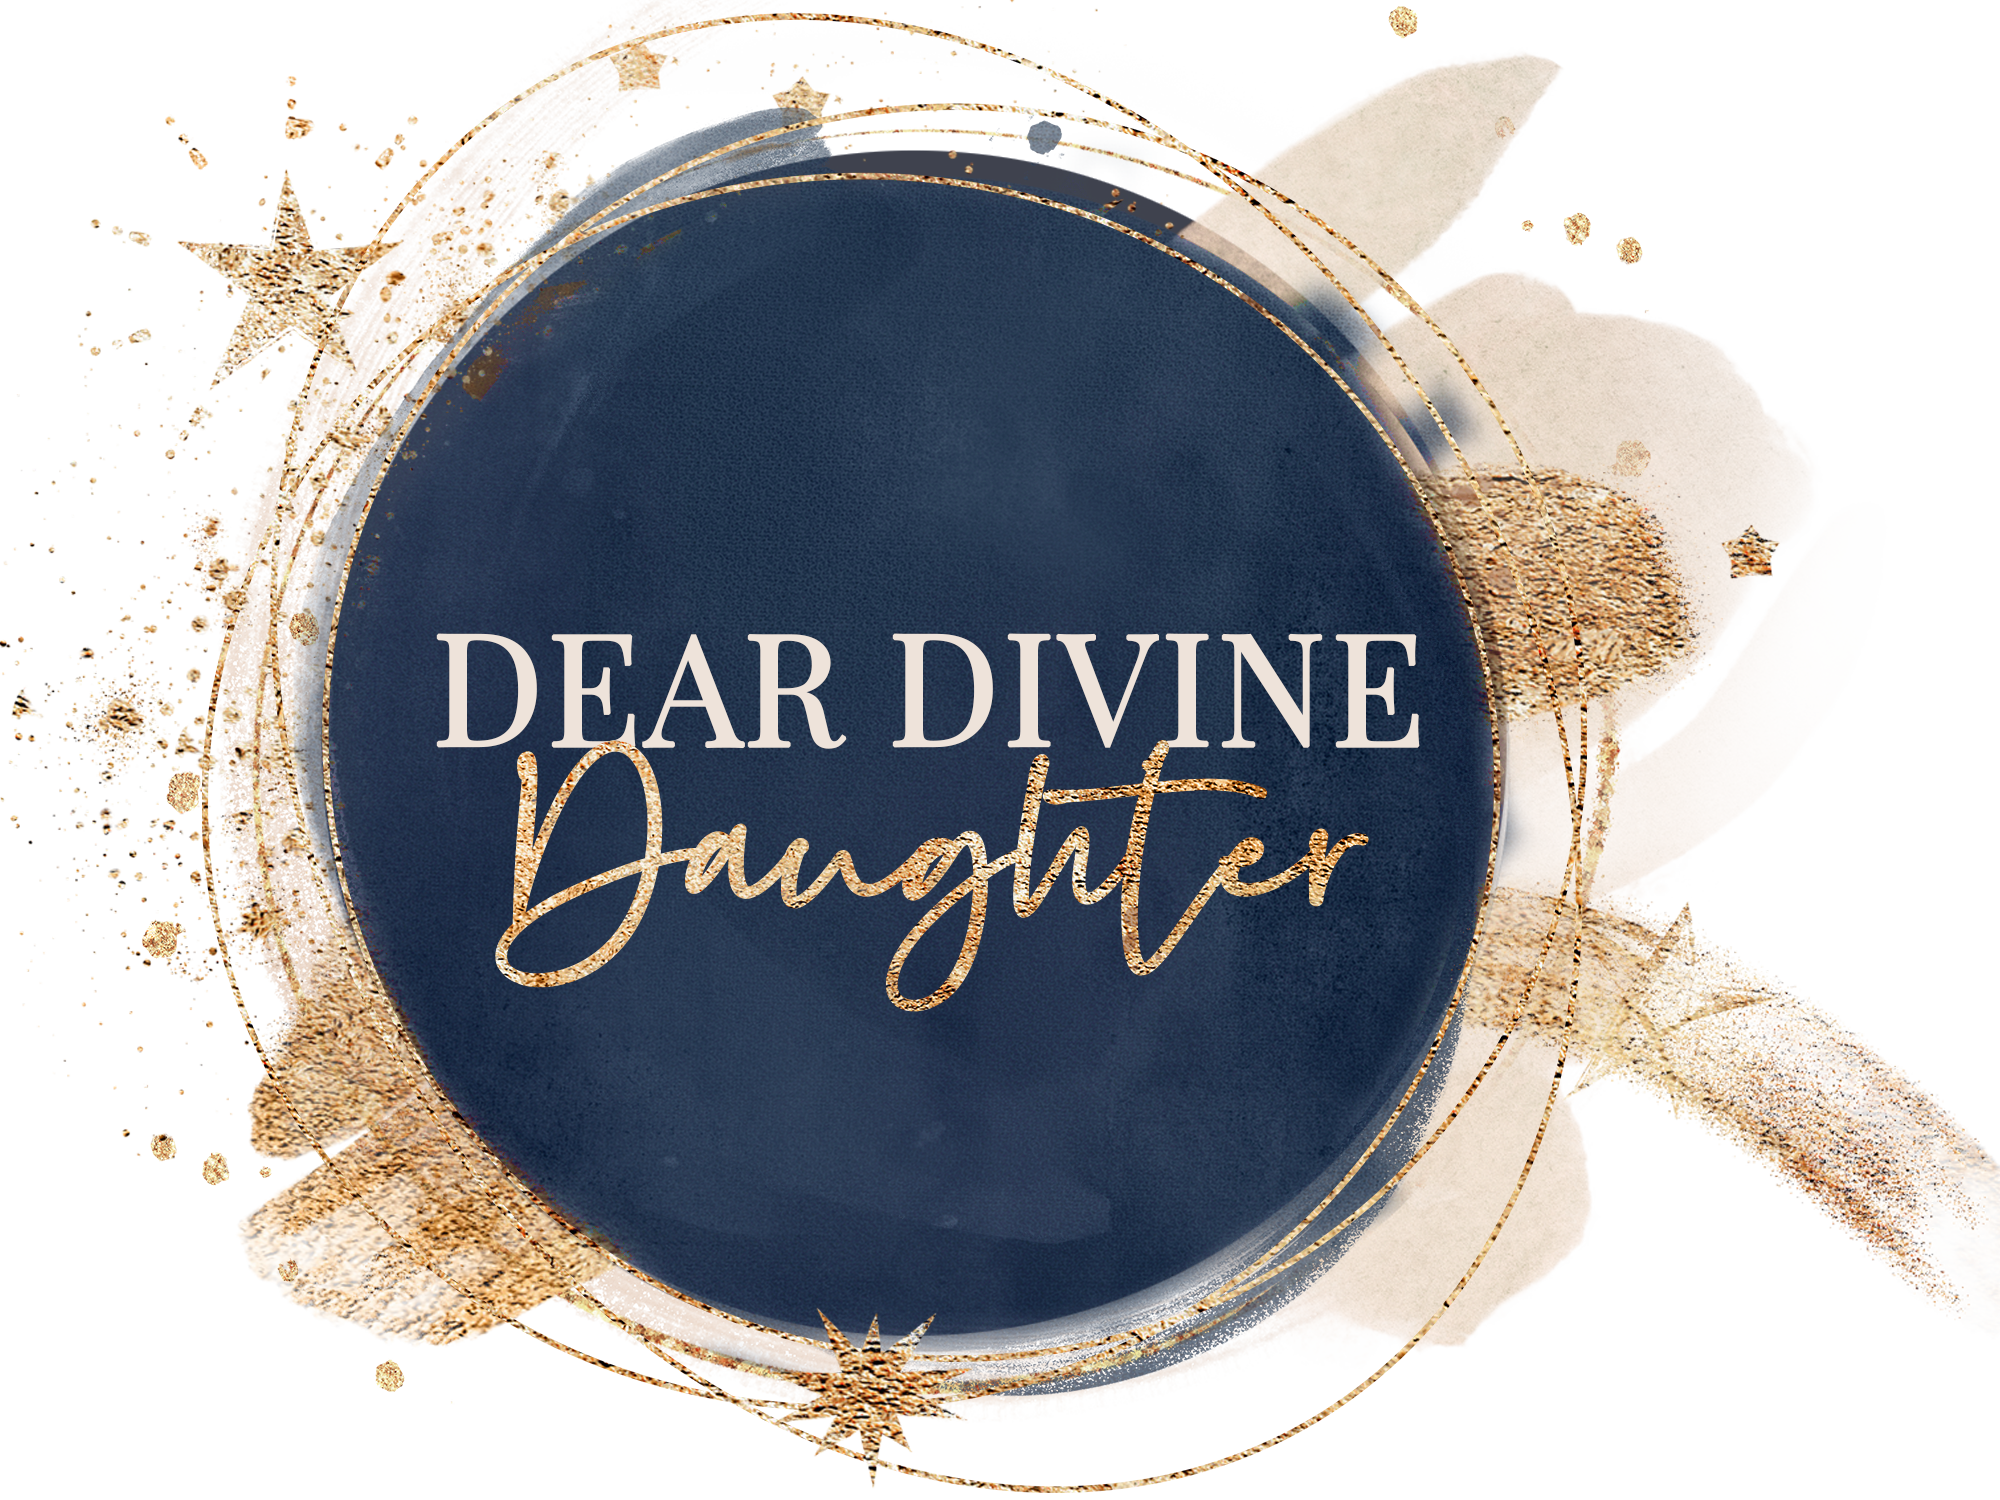 Dear Divine Daughter